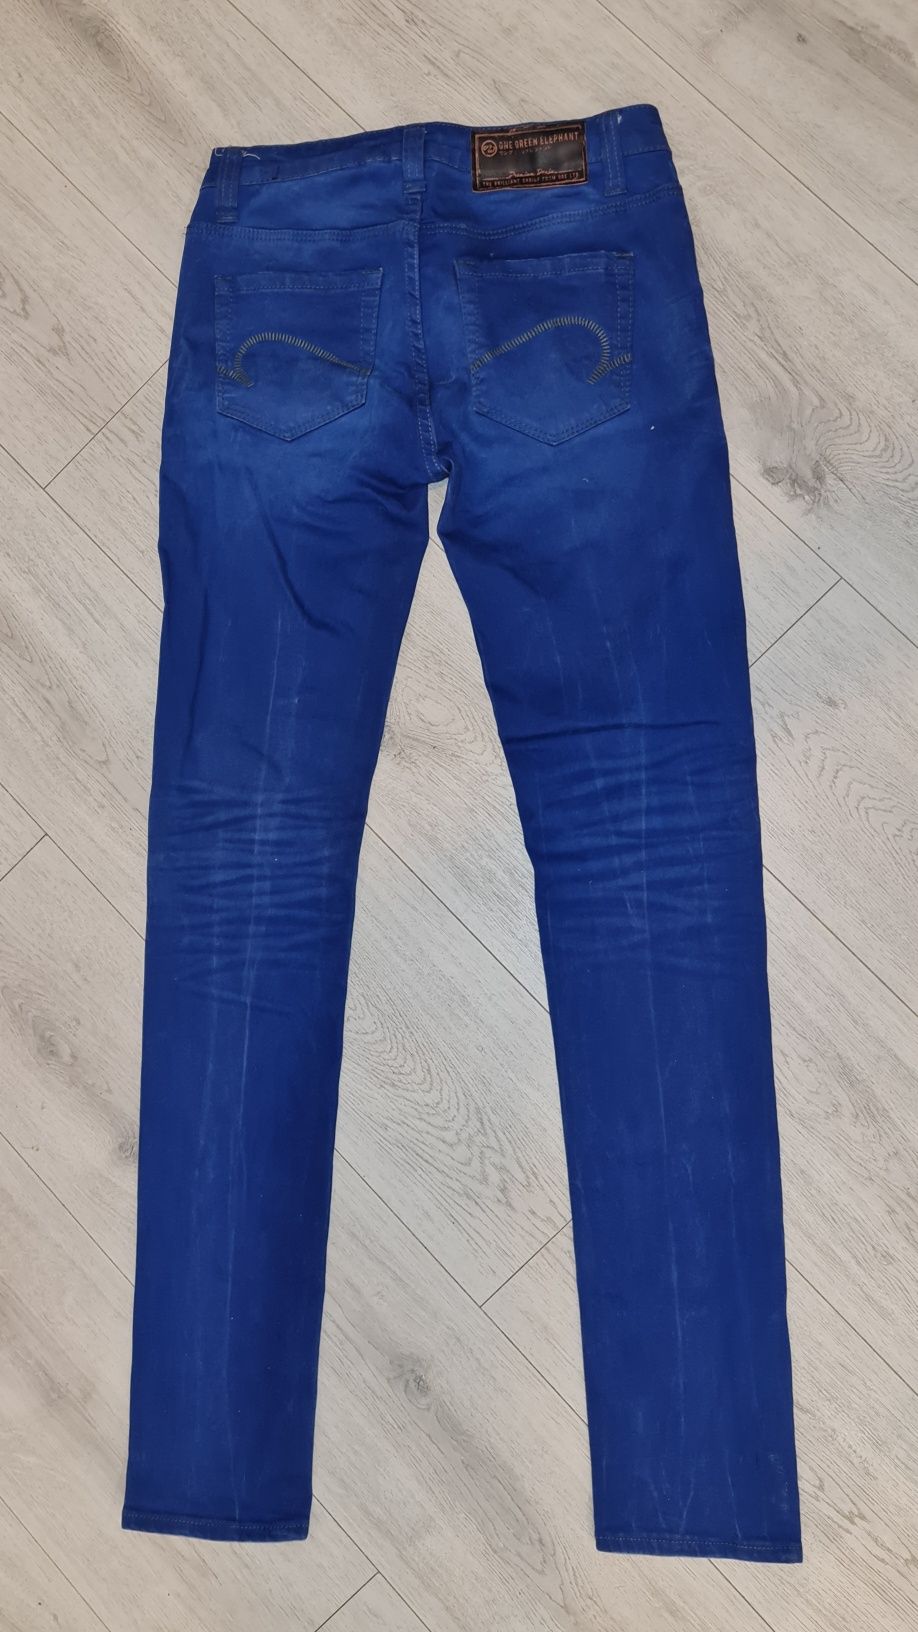 Spodnie damskie jeans rozm 36/38